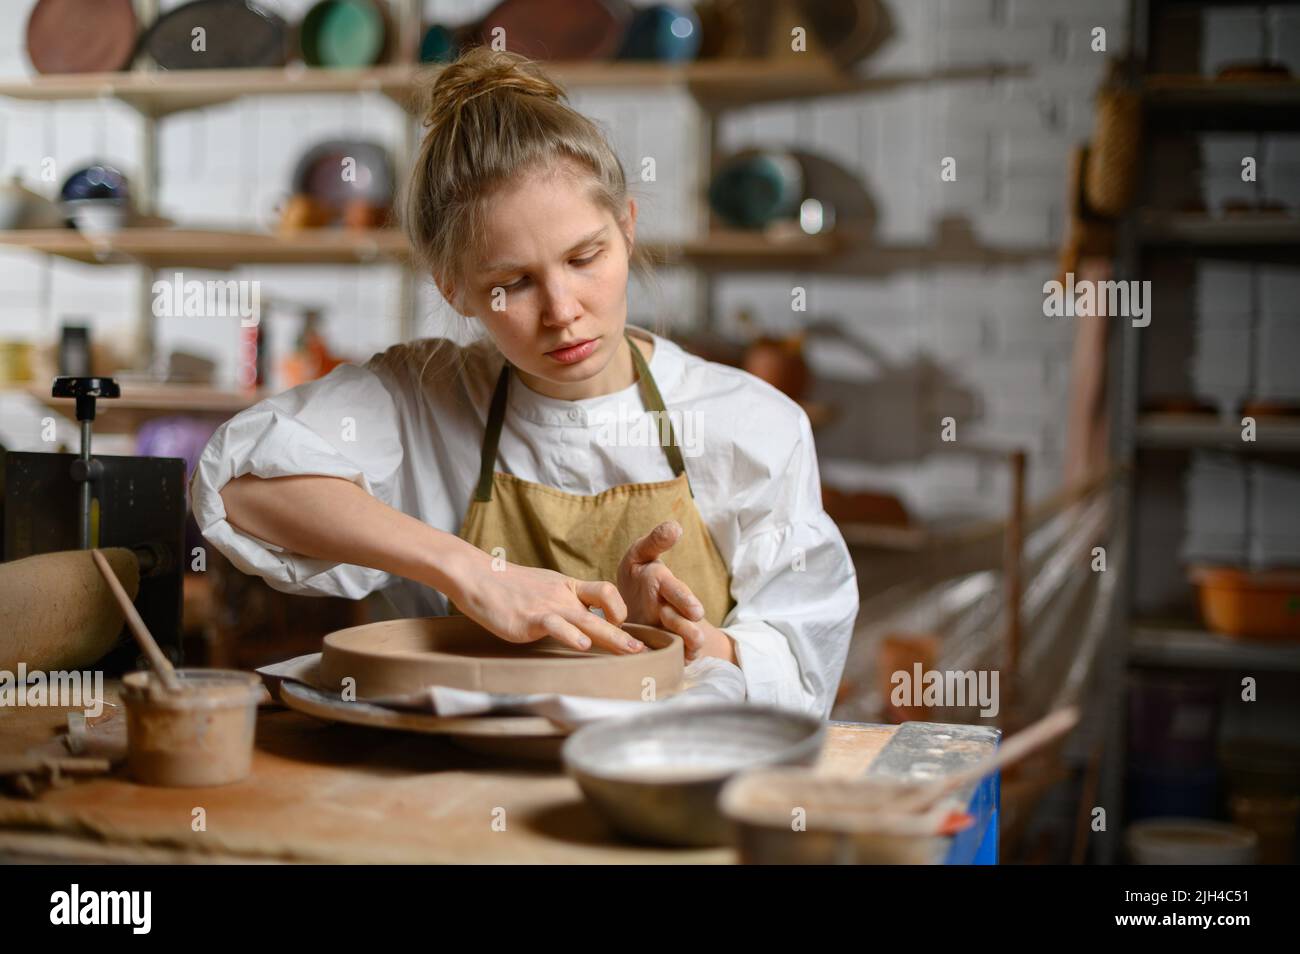 Ein Keramiker macht einen Teller. Frau in einer Schürze arbeitet in einer Töpferwerkstatt. Stockfoto